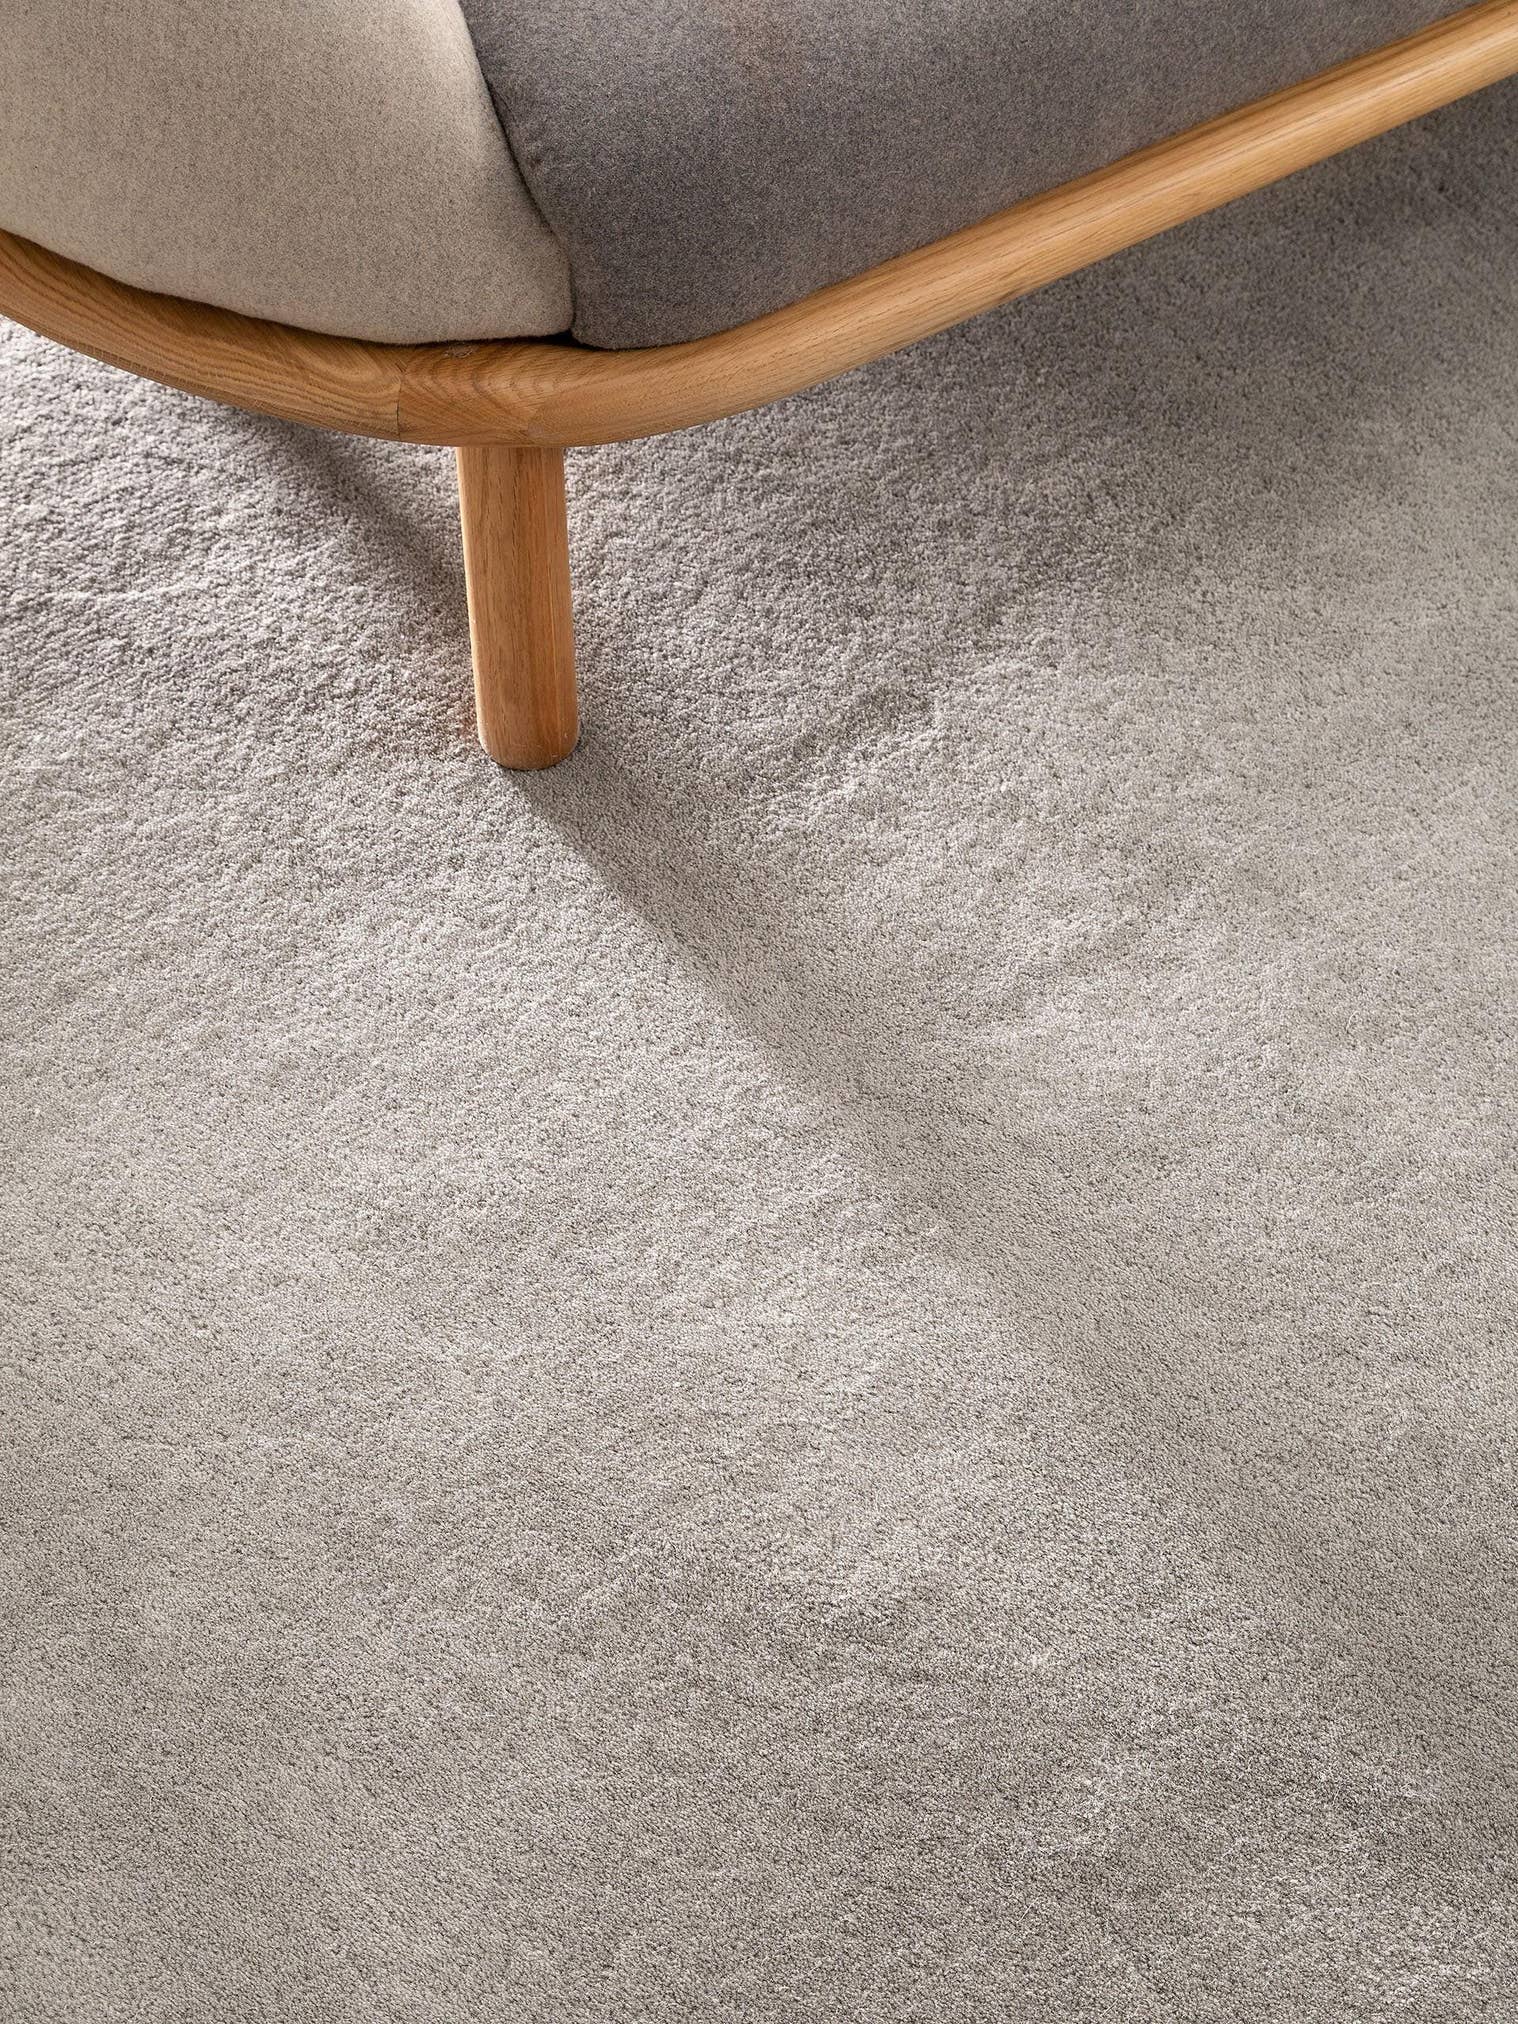 Teppich aus 100% Wolle in Grau mit 6 bis 10 mm hohem Flor von benuta Nest